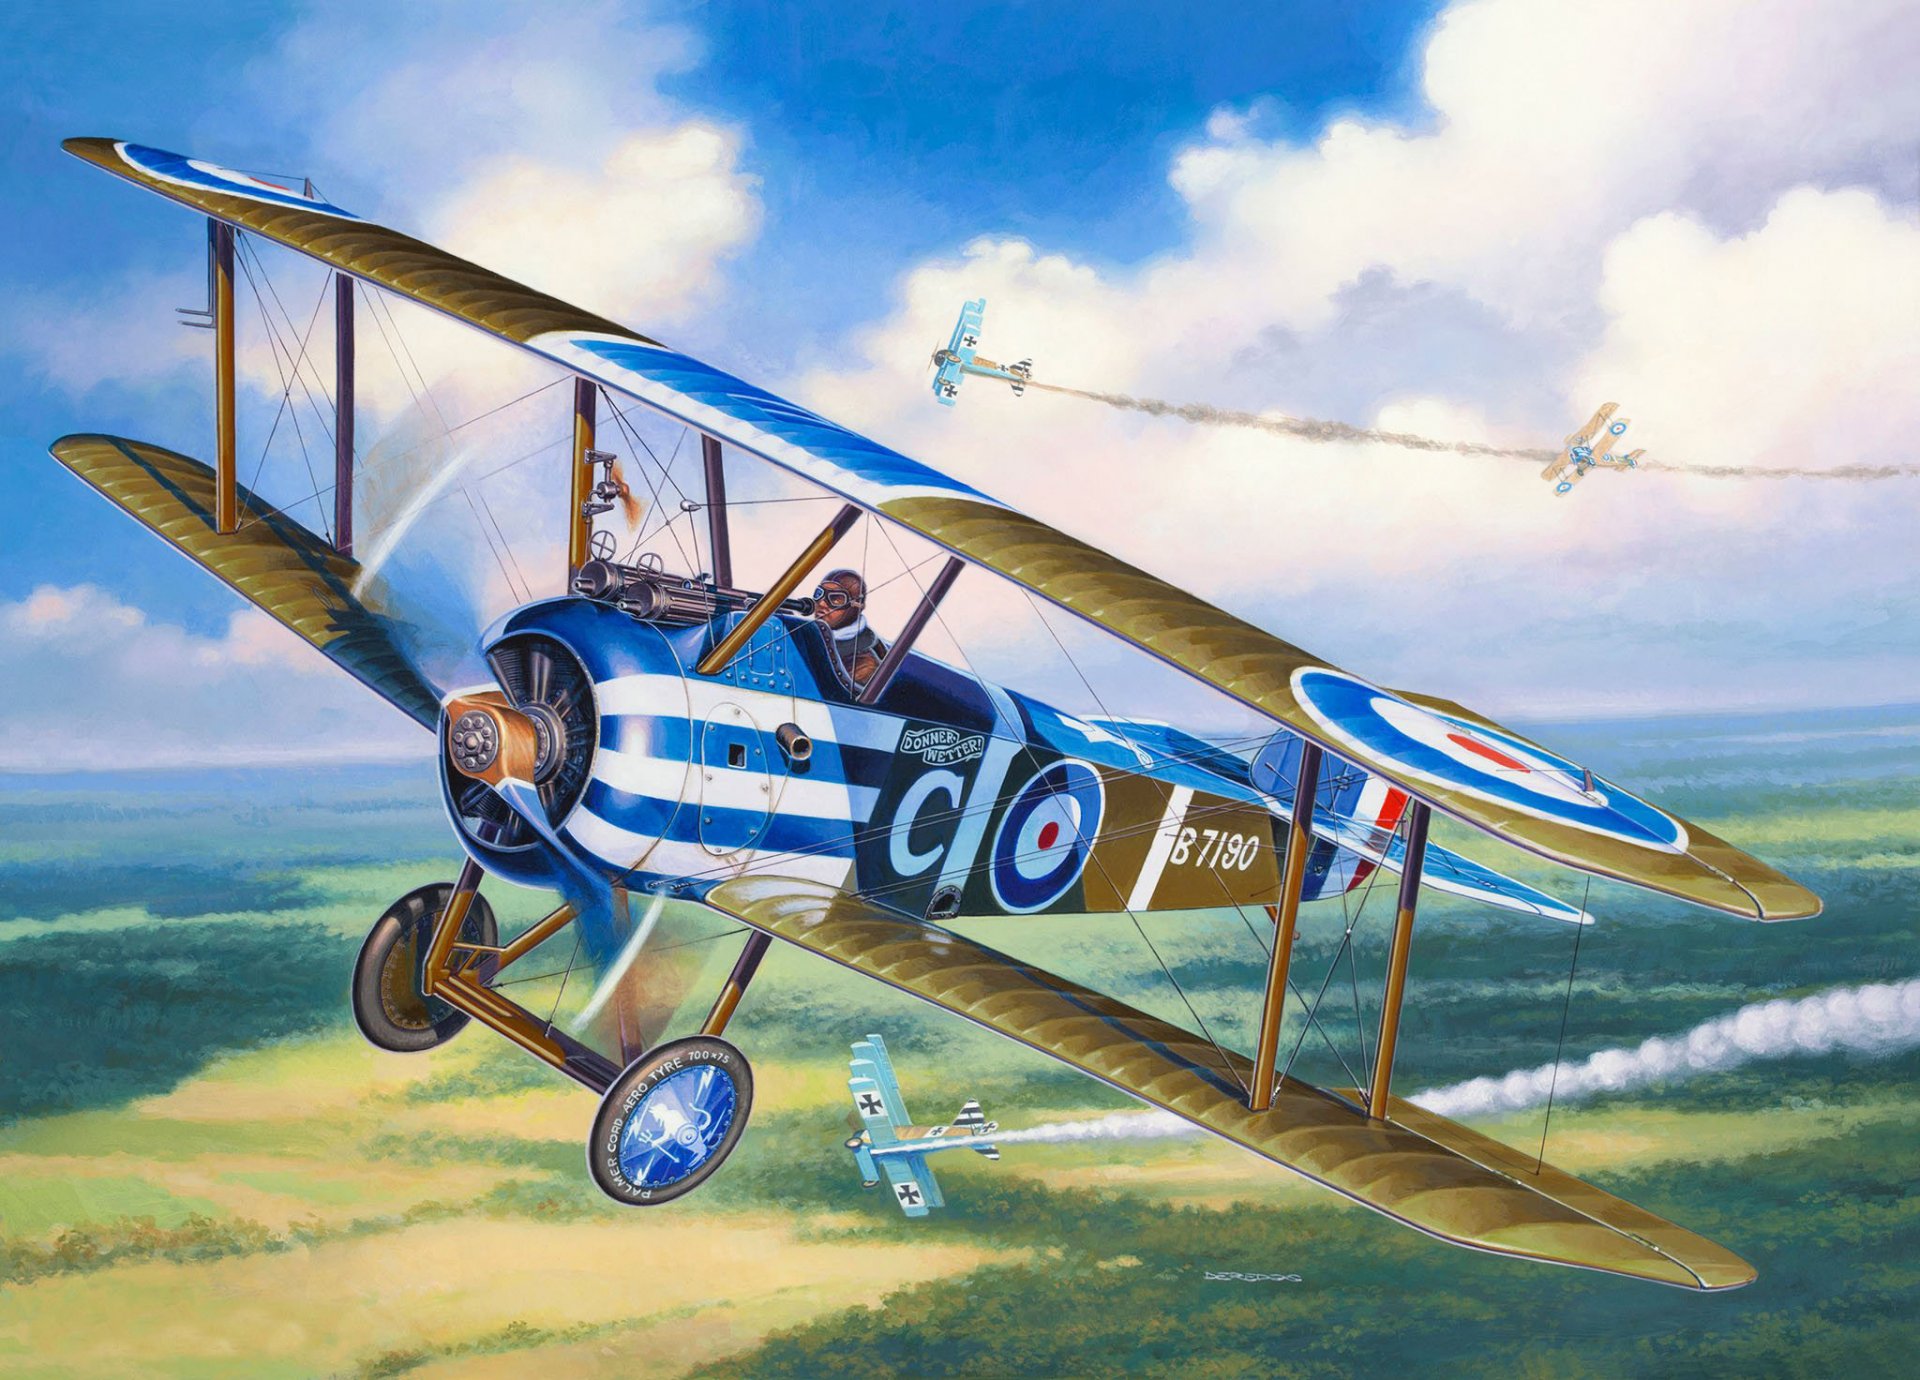 арт самолет сопвич верблюд британский одноместный истребитель известен отличной маневренностью среди самолетов тех лет первой мировой войны воздушный бой первая мировая .